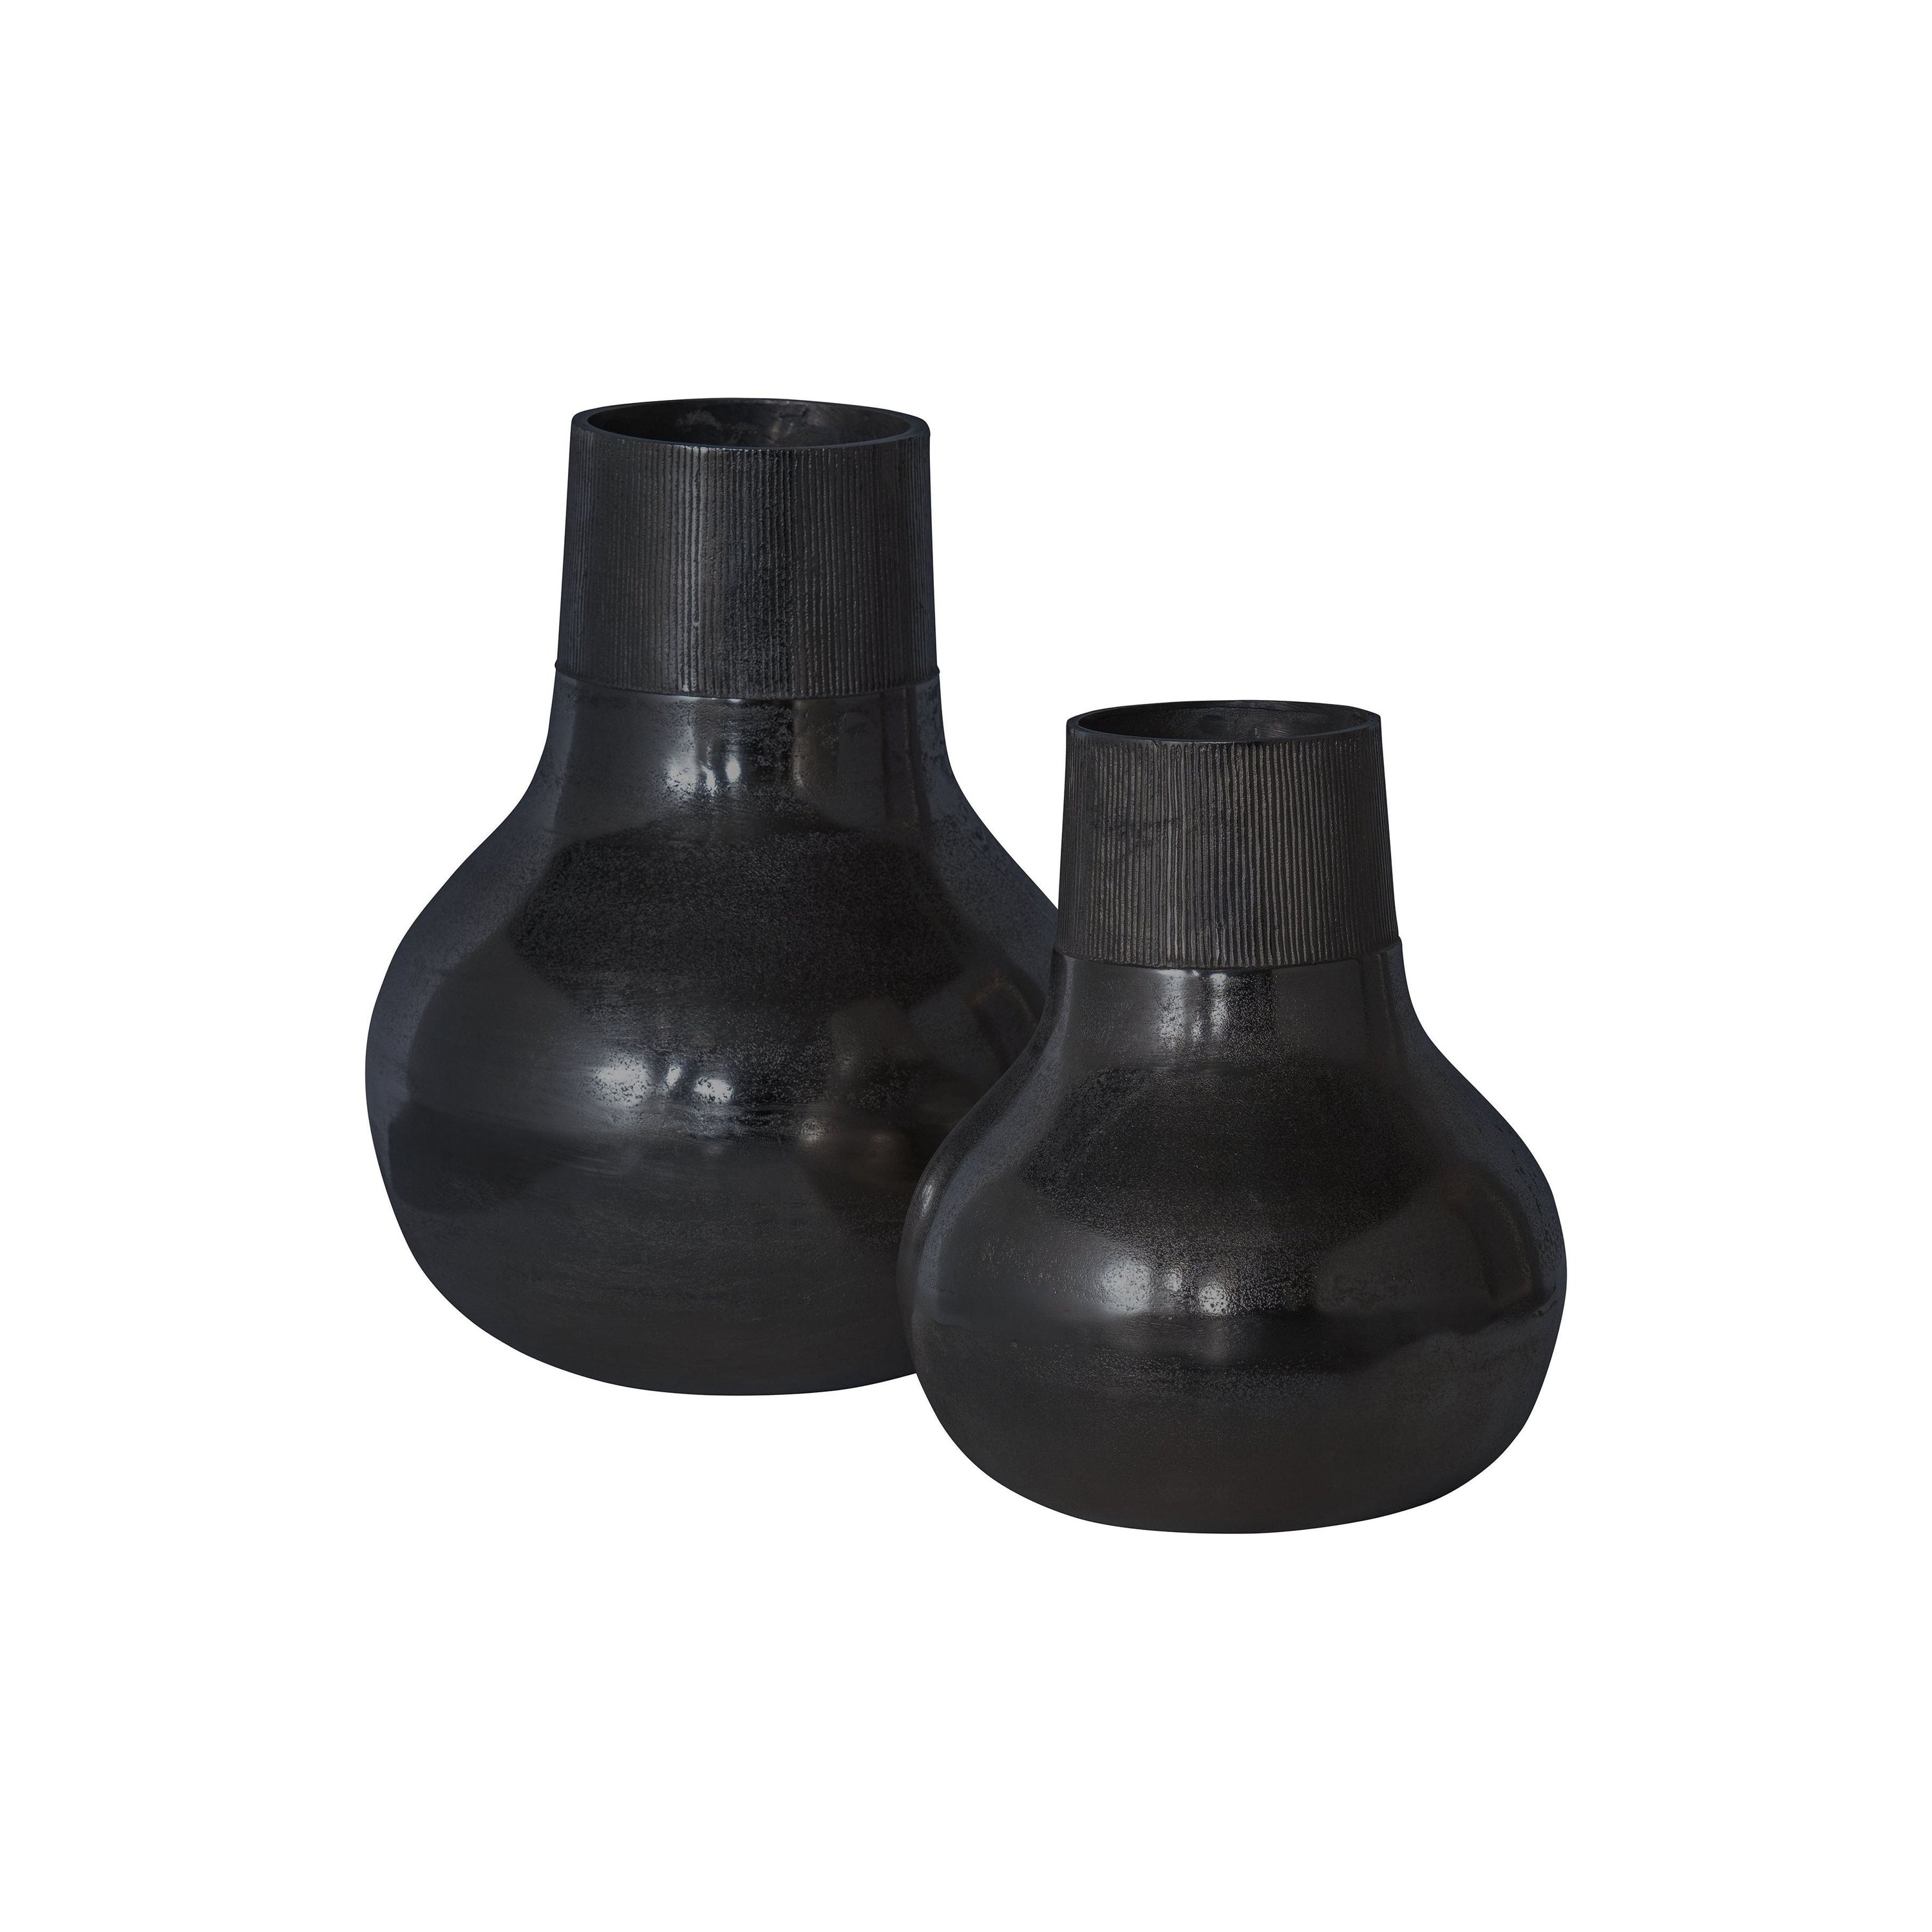 "METAL" vaza XL, juoda spalva, metalas